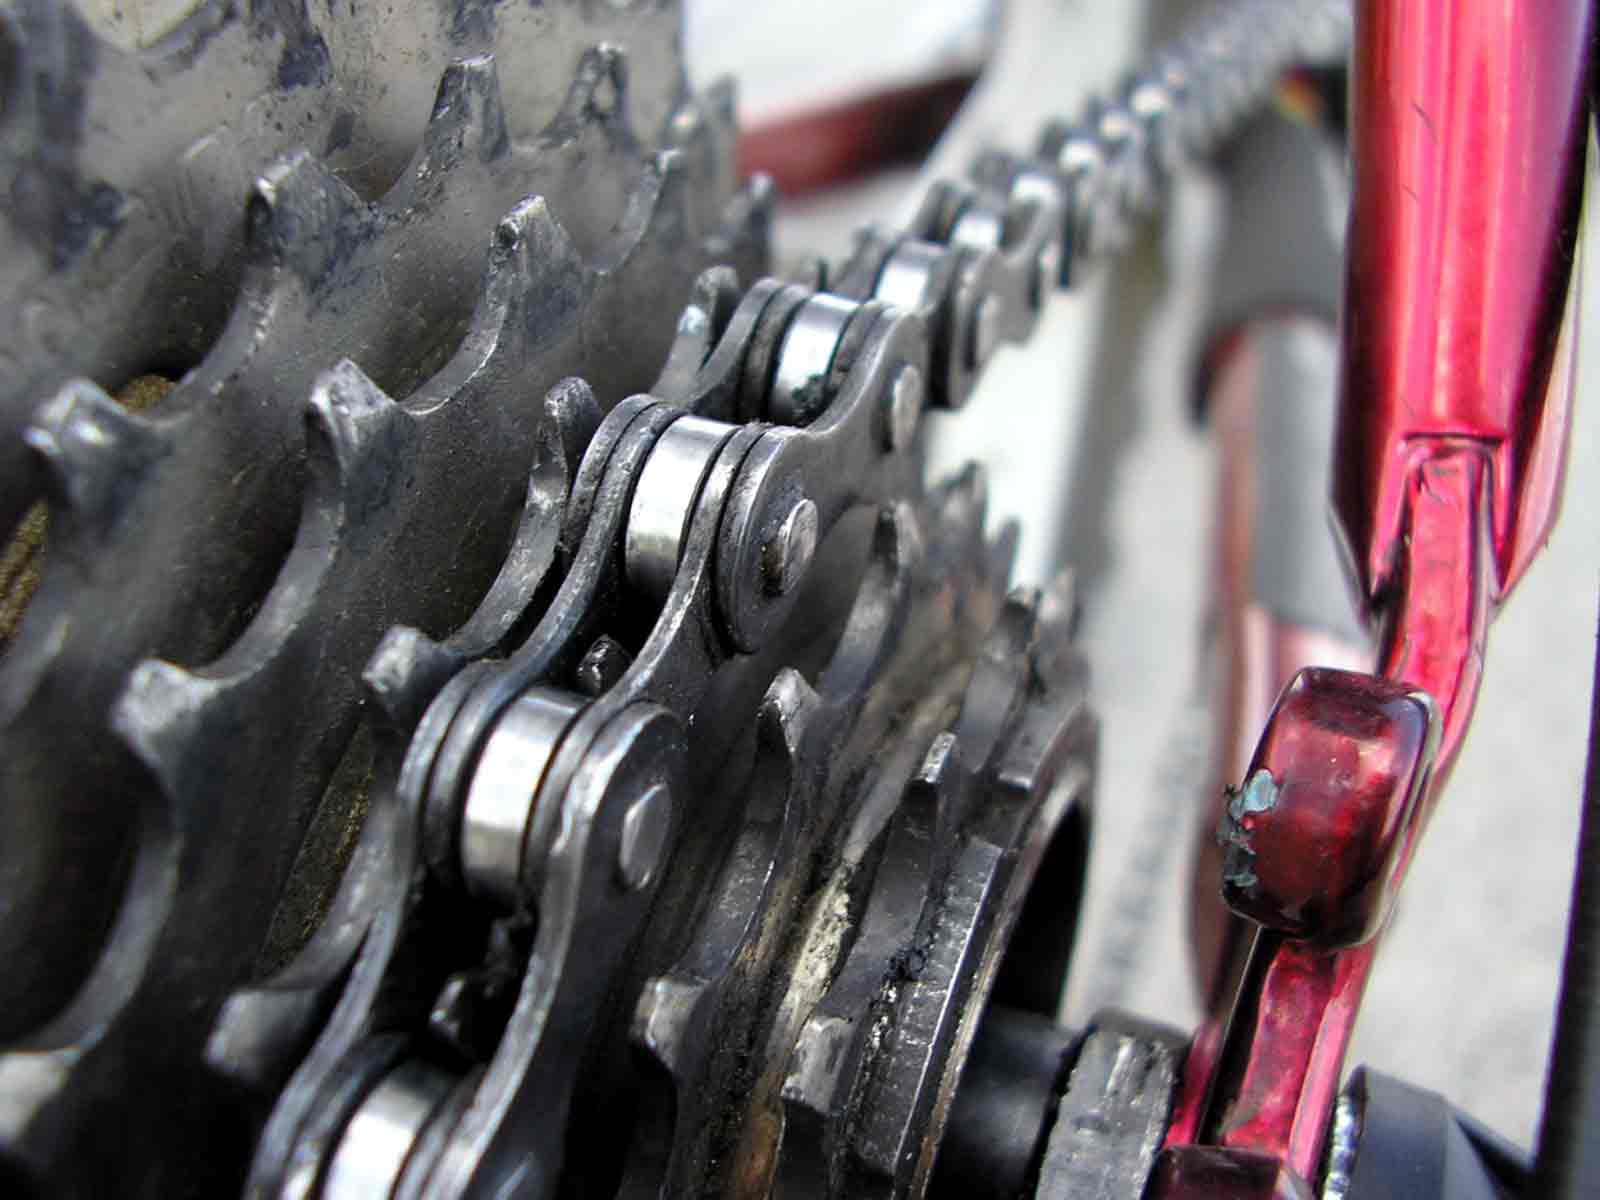 Bike Gears